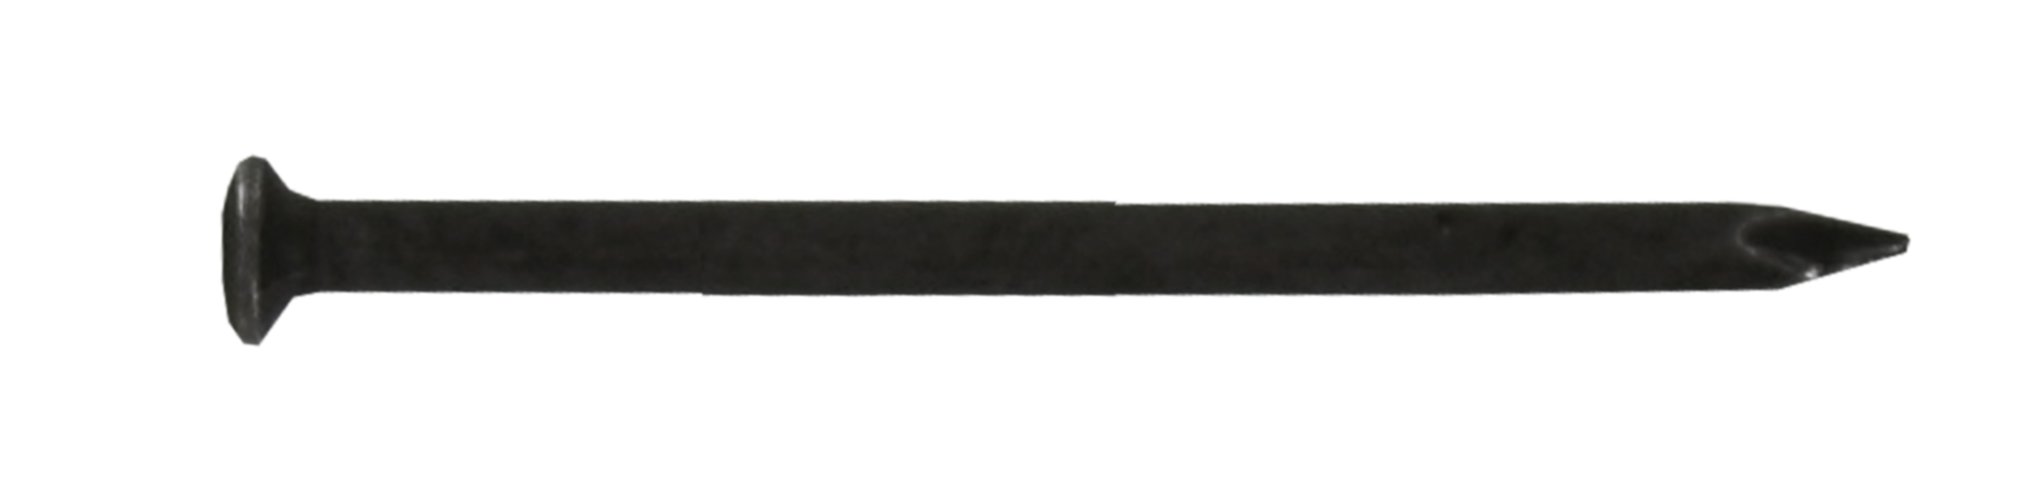 Pointe tête ronde acier trempé pour béton 2x16 - sachet x70g